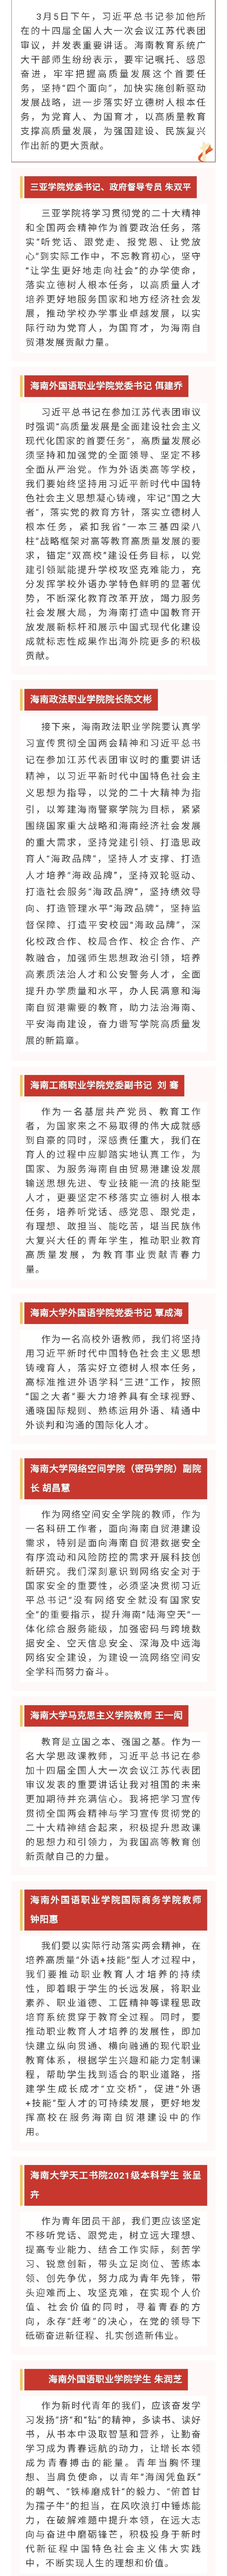 习近平总书记在参加江苏代表团审议时的重要讲话引起海南教育系统热烈反响